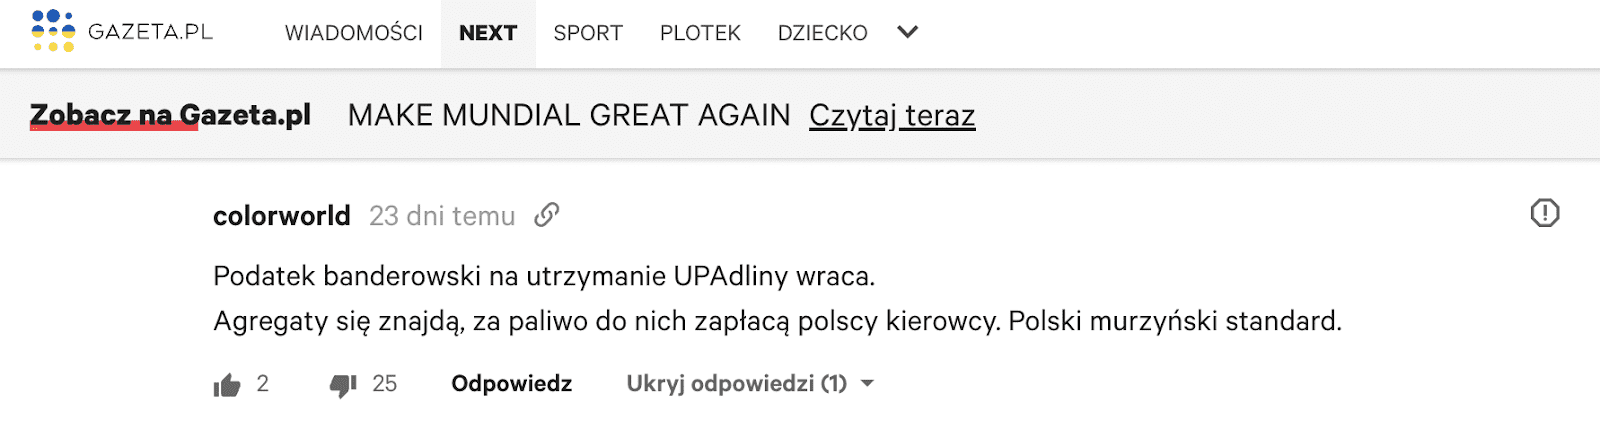 Antyukraiński komentarz na Gazeta.pl